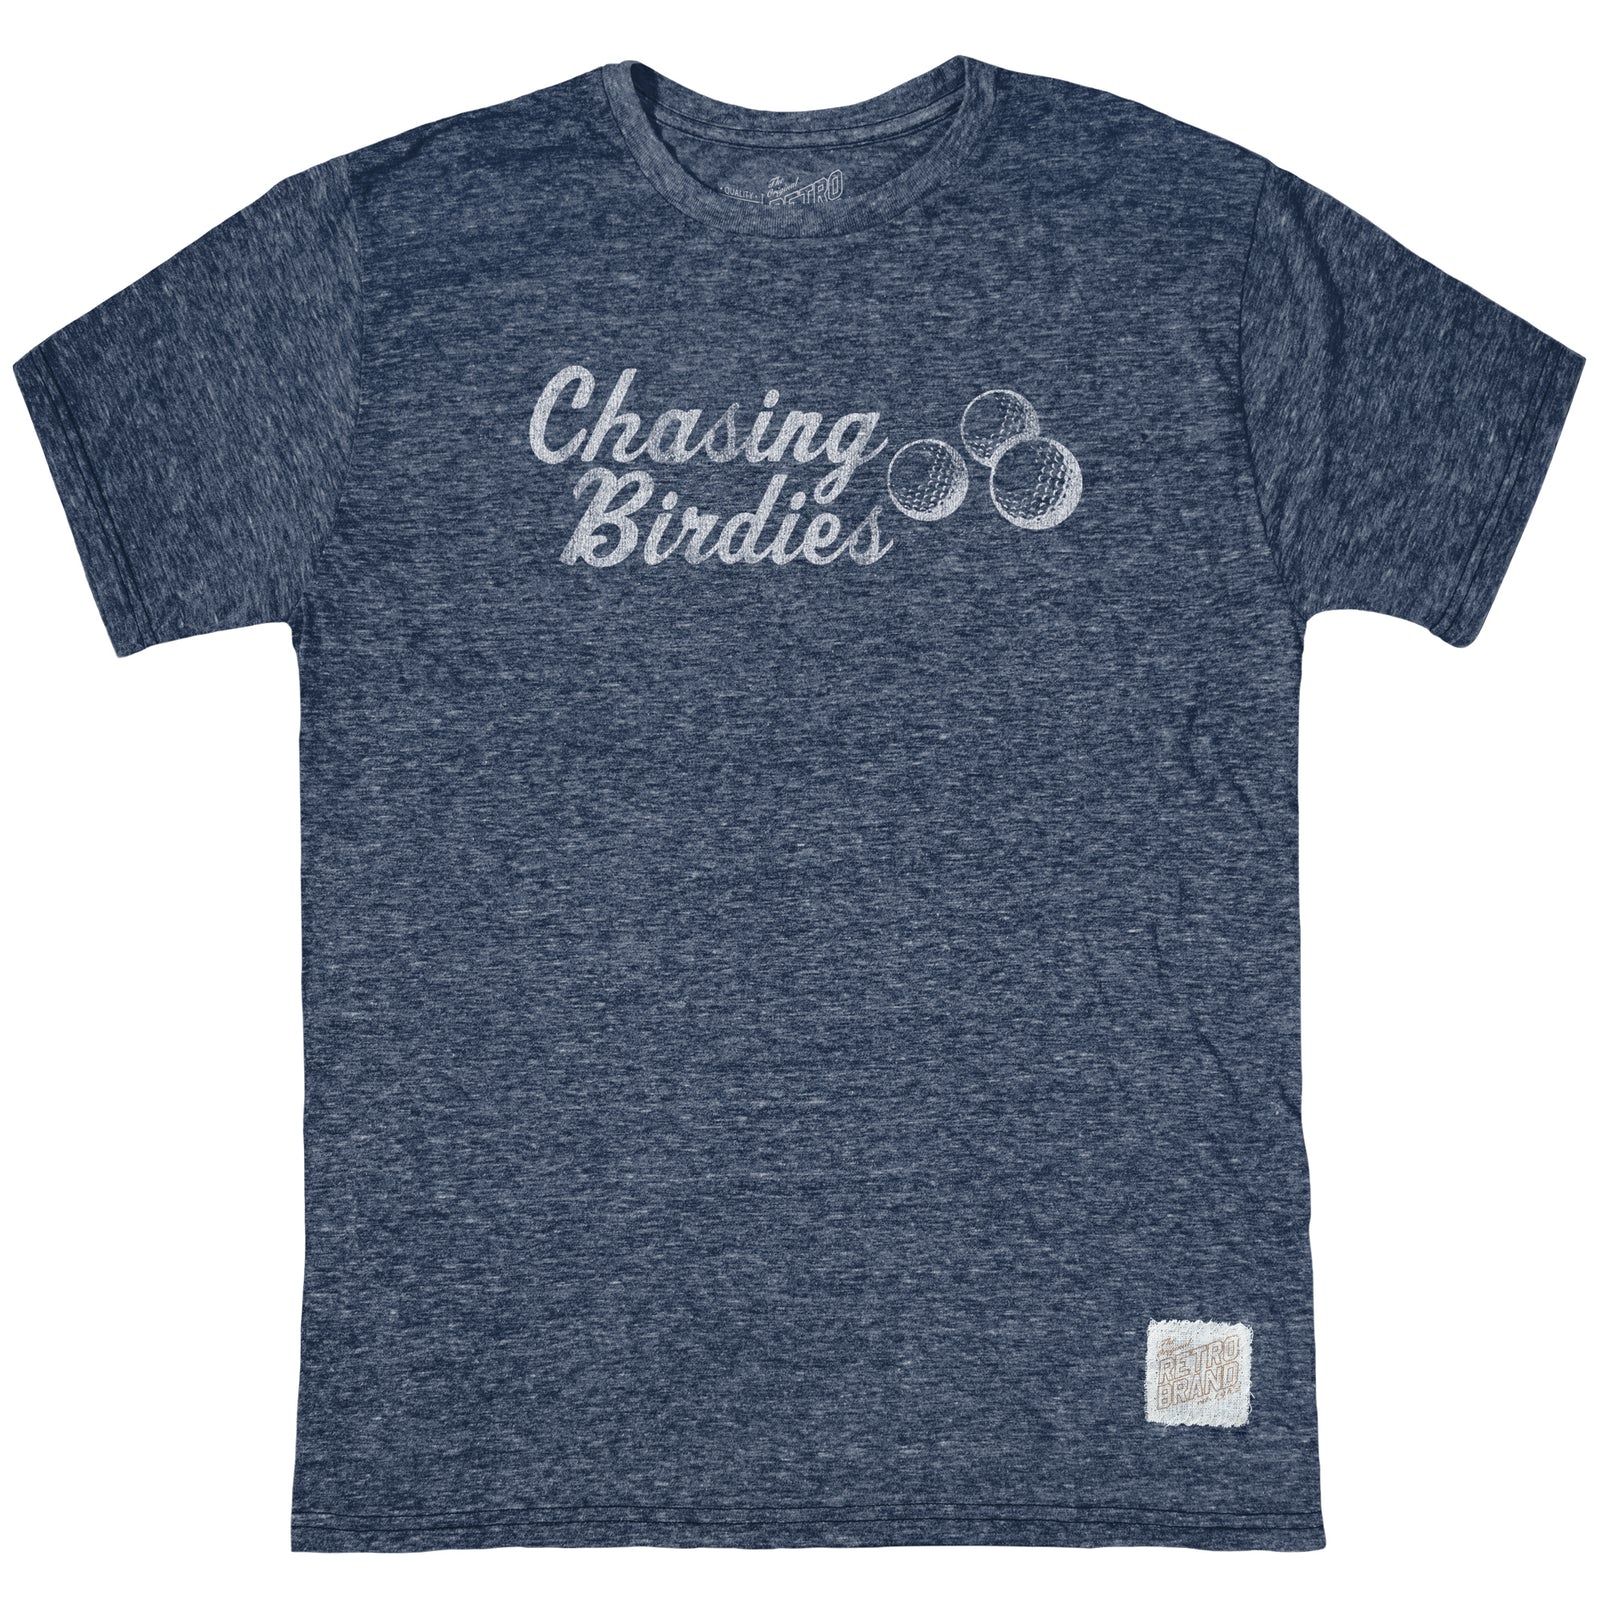 Chasing Birdies Tri-Blend Tee